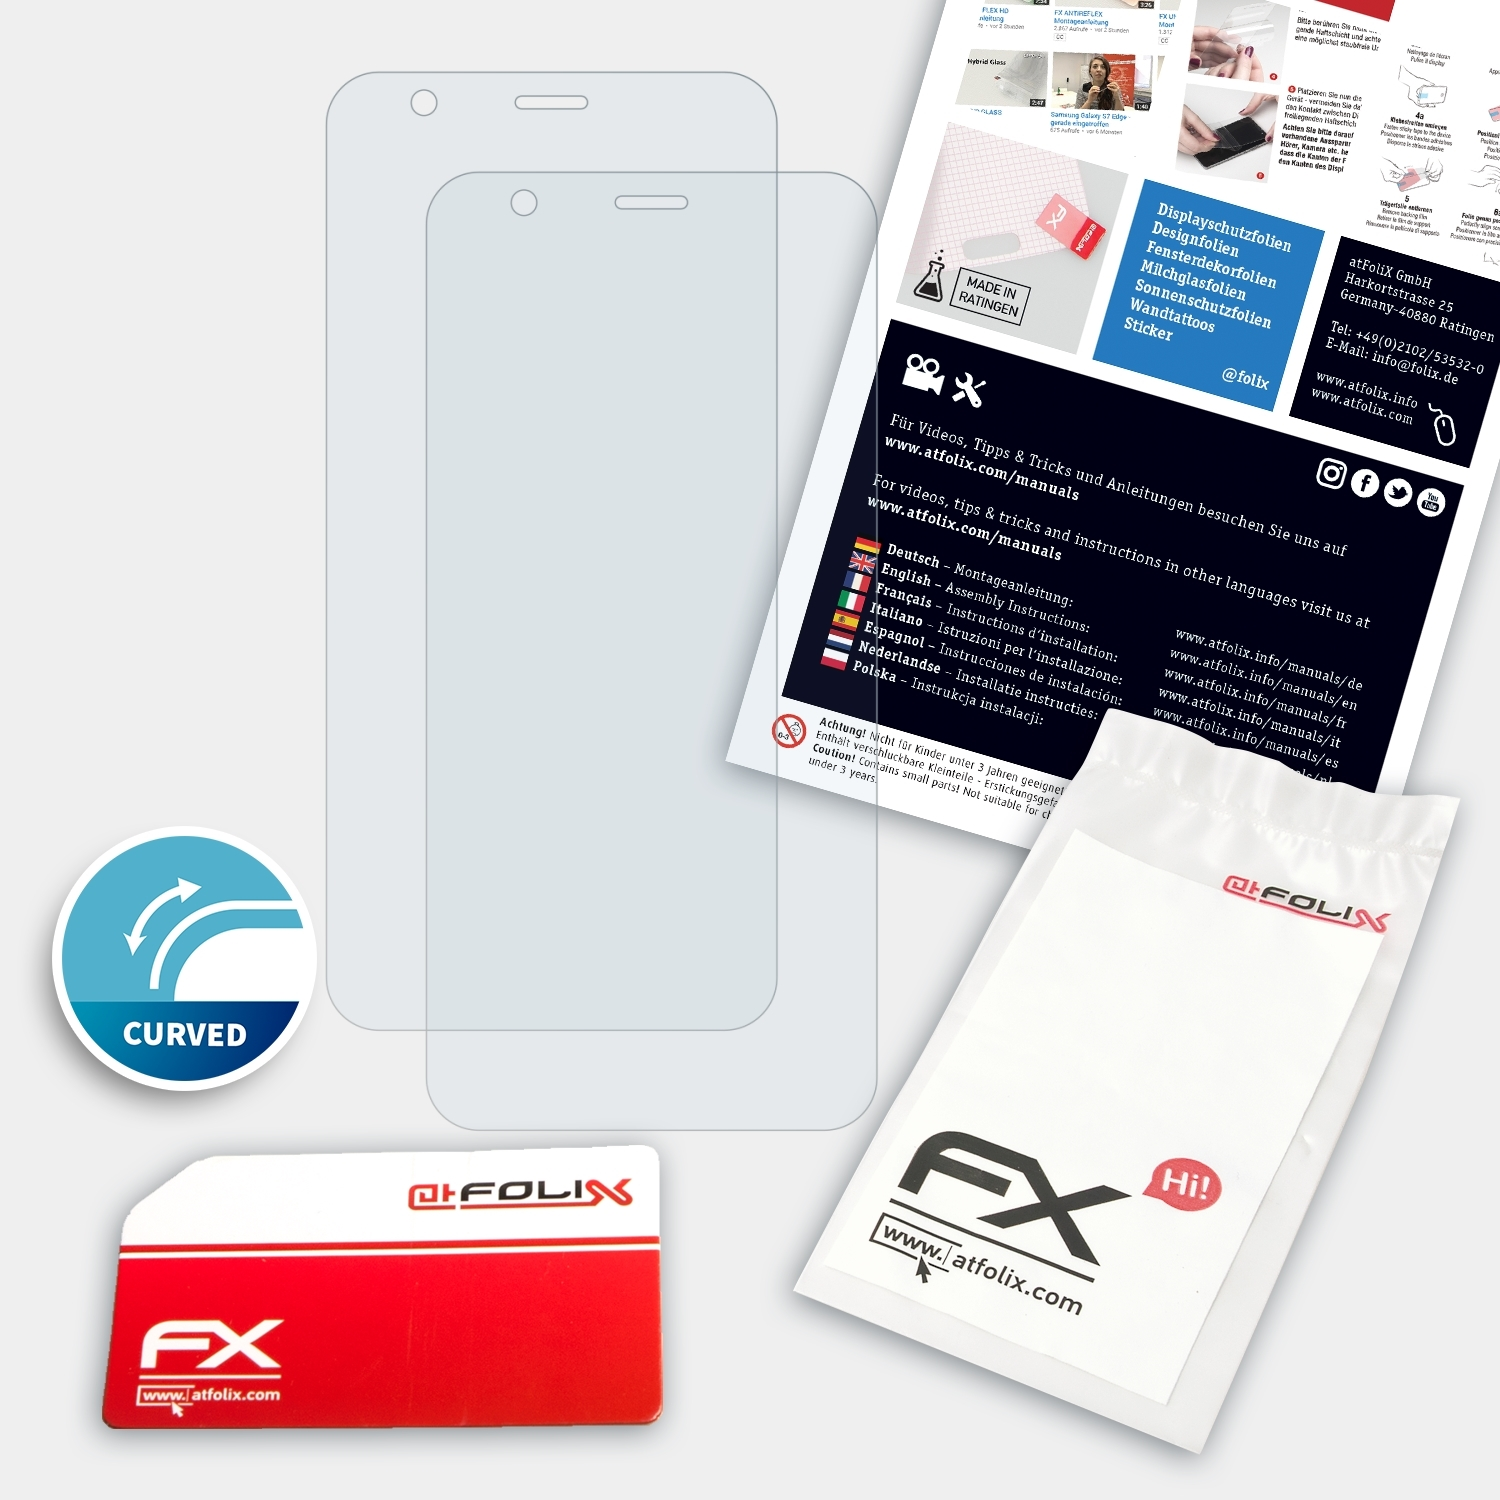 ATFOLIX 2x FX-ActiFleX Displayschutz(für Asus L1) ZenFone Live